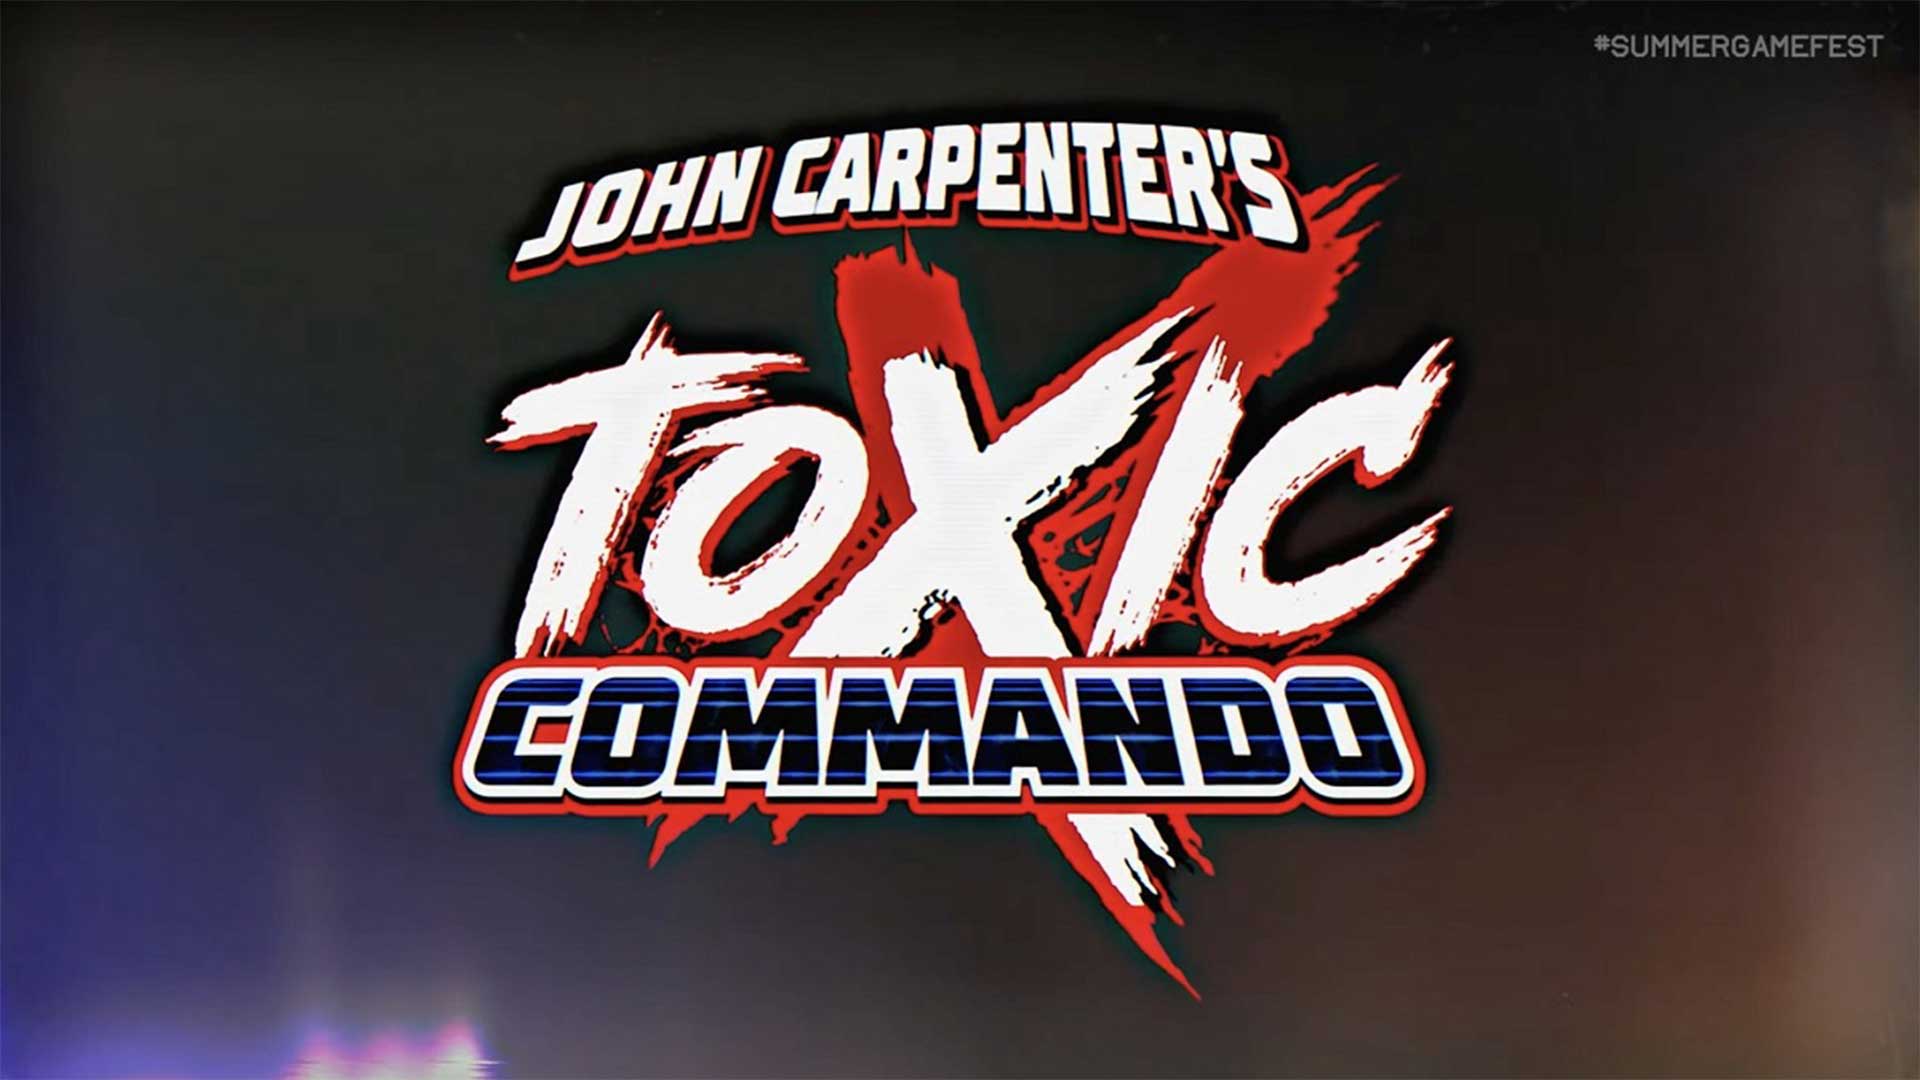 بازی John Carpenter's Toxic Commando معرفی شد